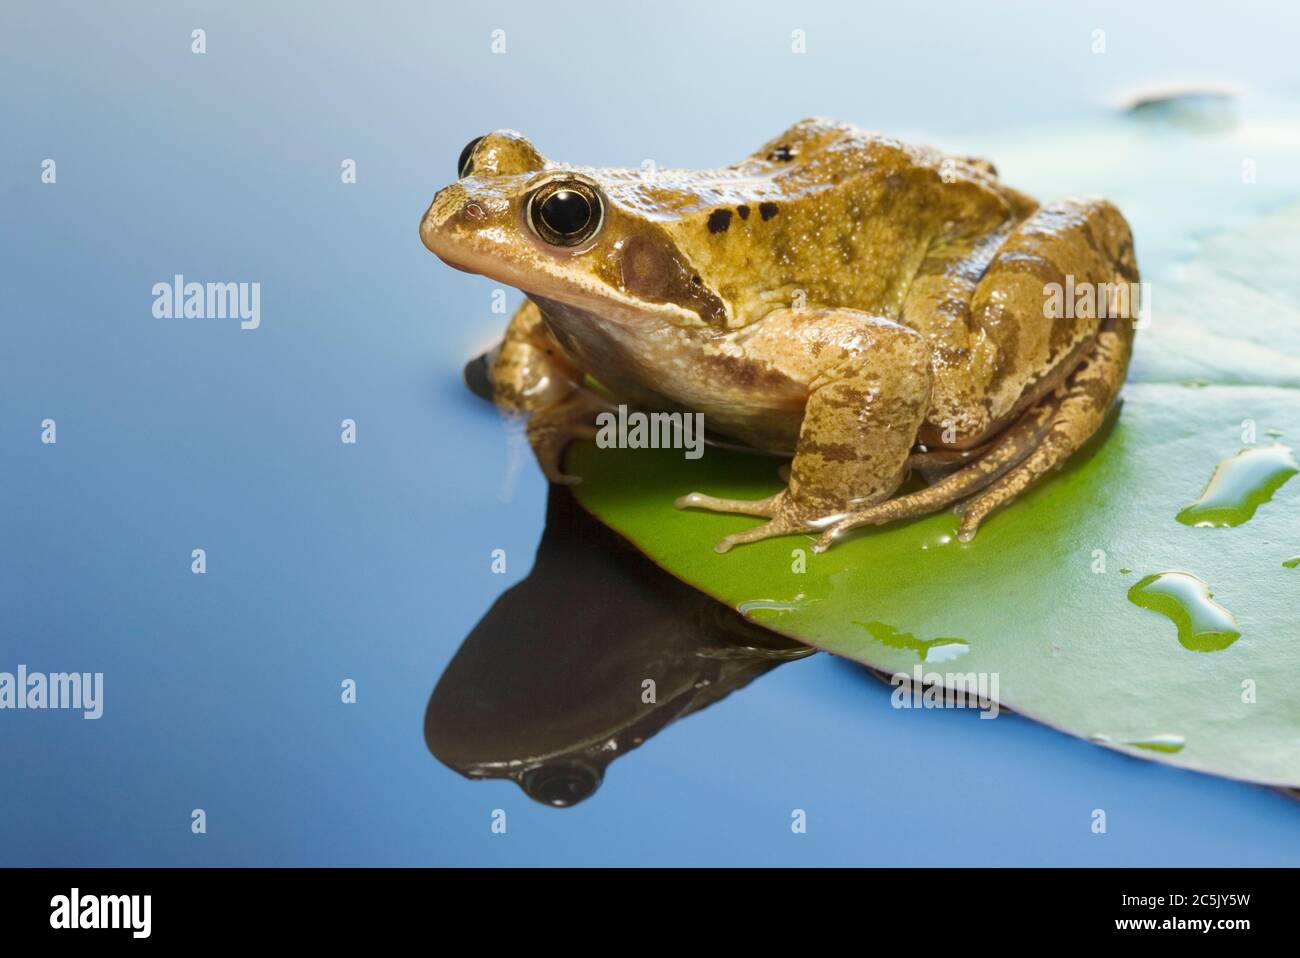 Common frog, Rana temporaria. Stock Photo